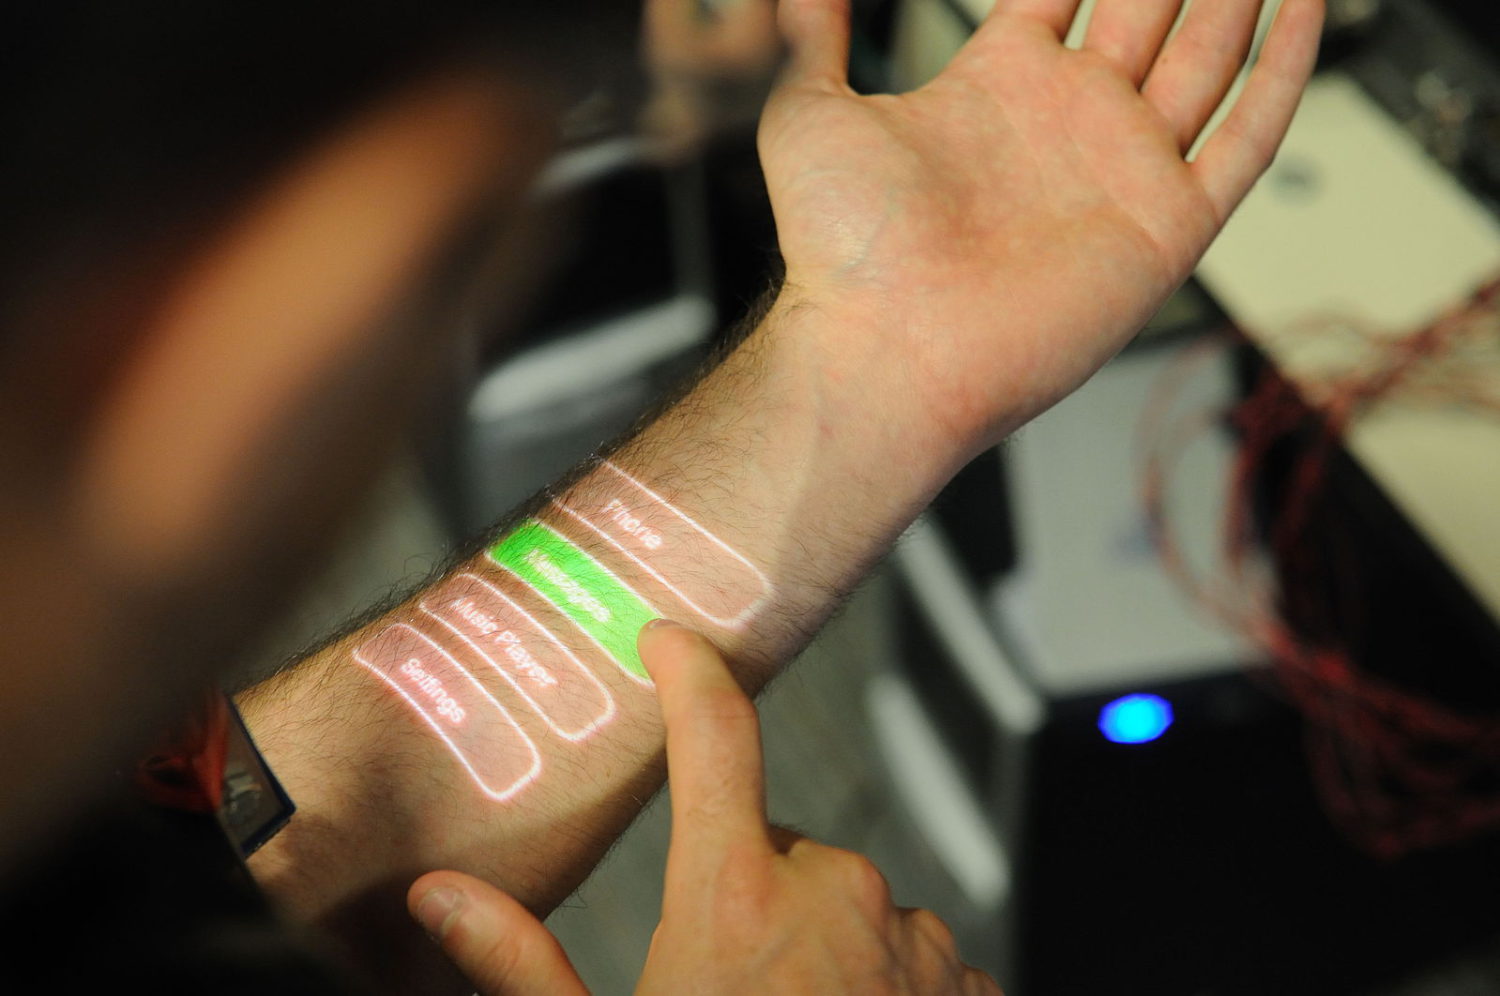 skinput arm buttons, a wearable technology